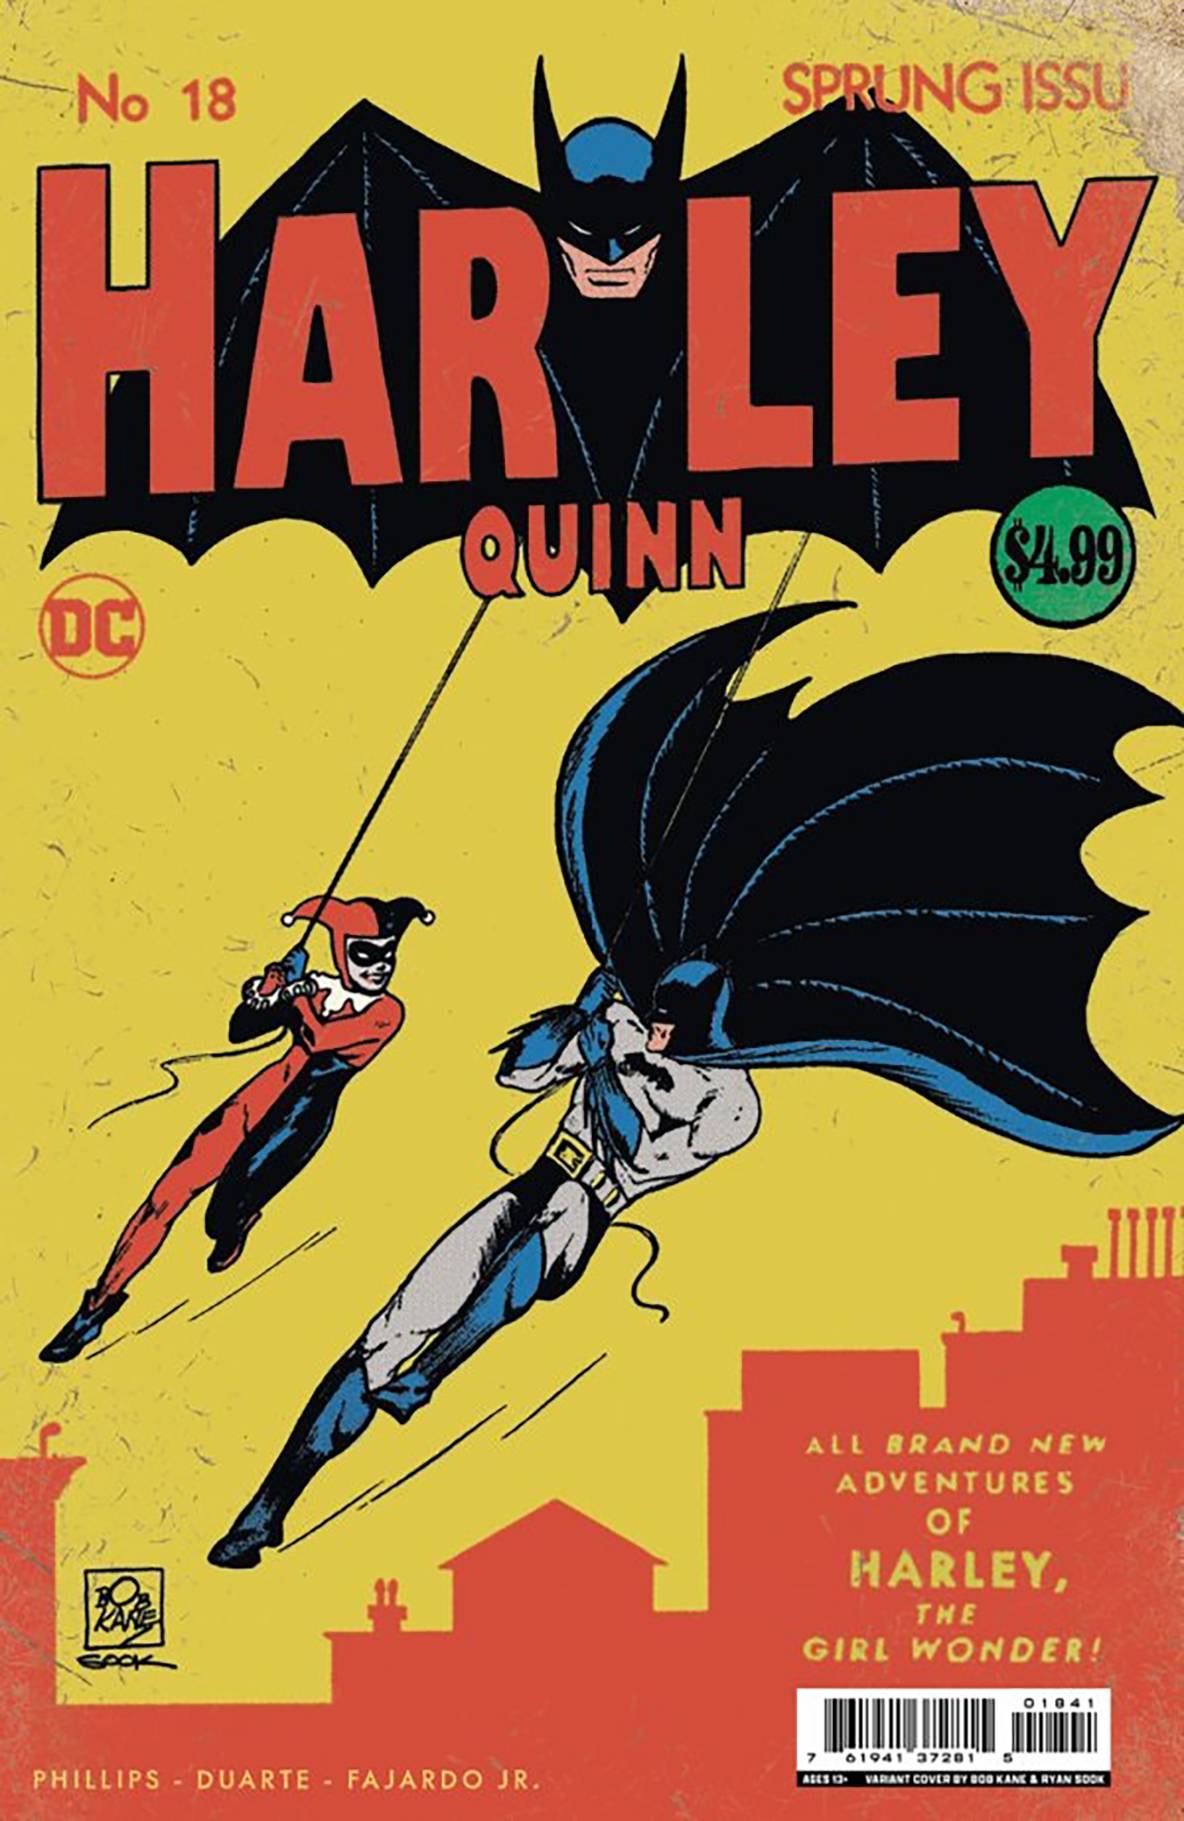 HARLEY QUINN #18 BATMAN HOMAGE SIGNED BY RYAN SOOK